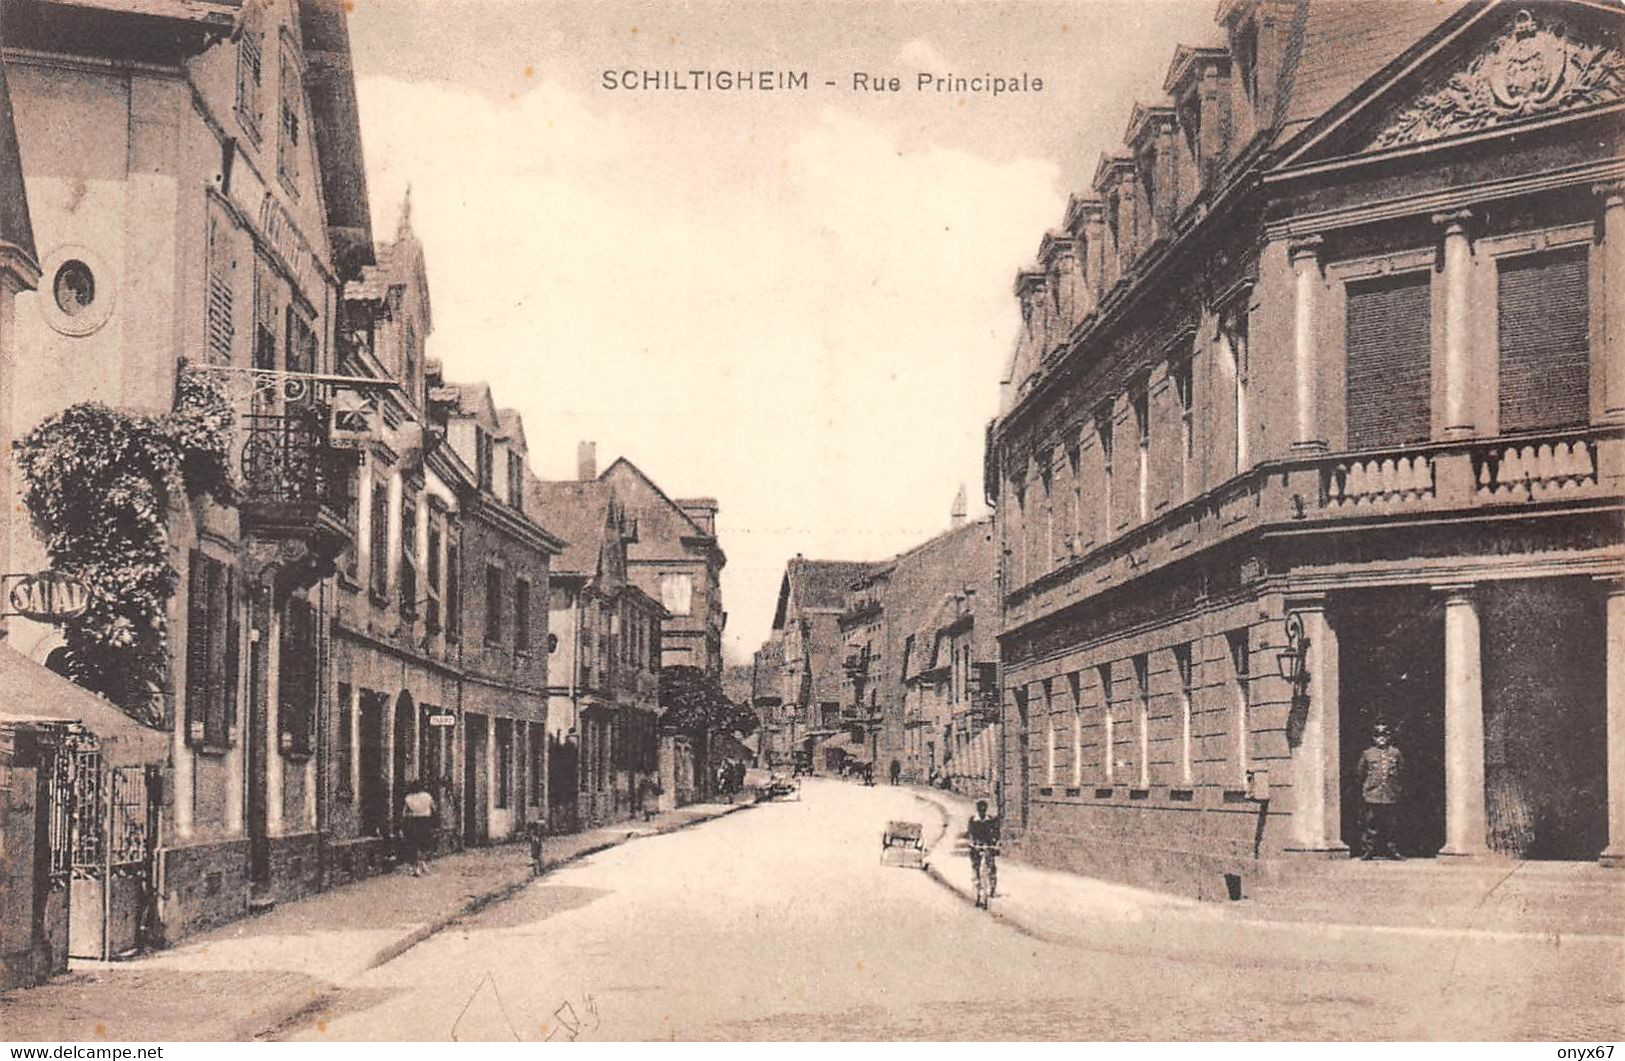 SCHILTIGHEIM-Strasbourg-67-Bas-Rhin-Rue Principale-Magasin SADAL à Gauche-Photo Zschetzschingck Editeur - Schiltigheim